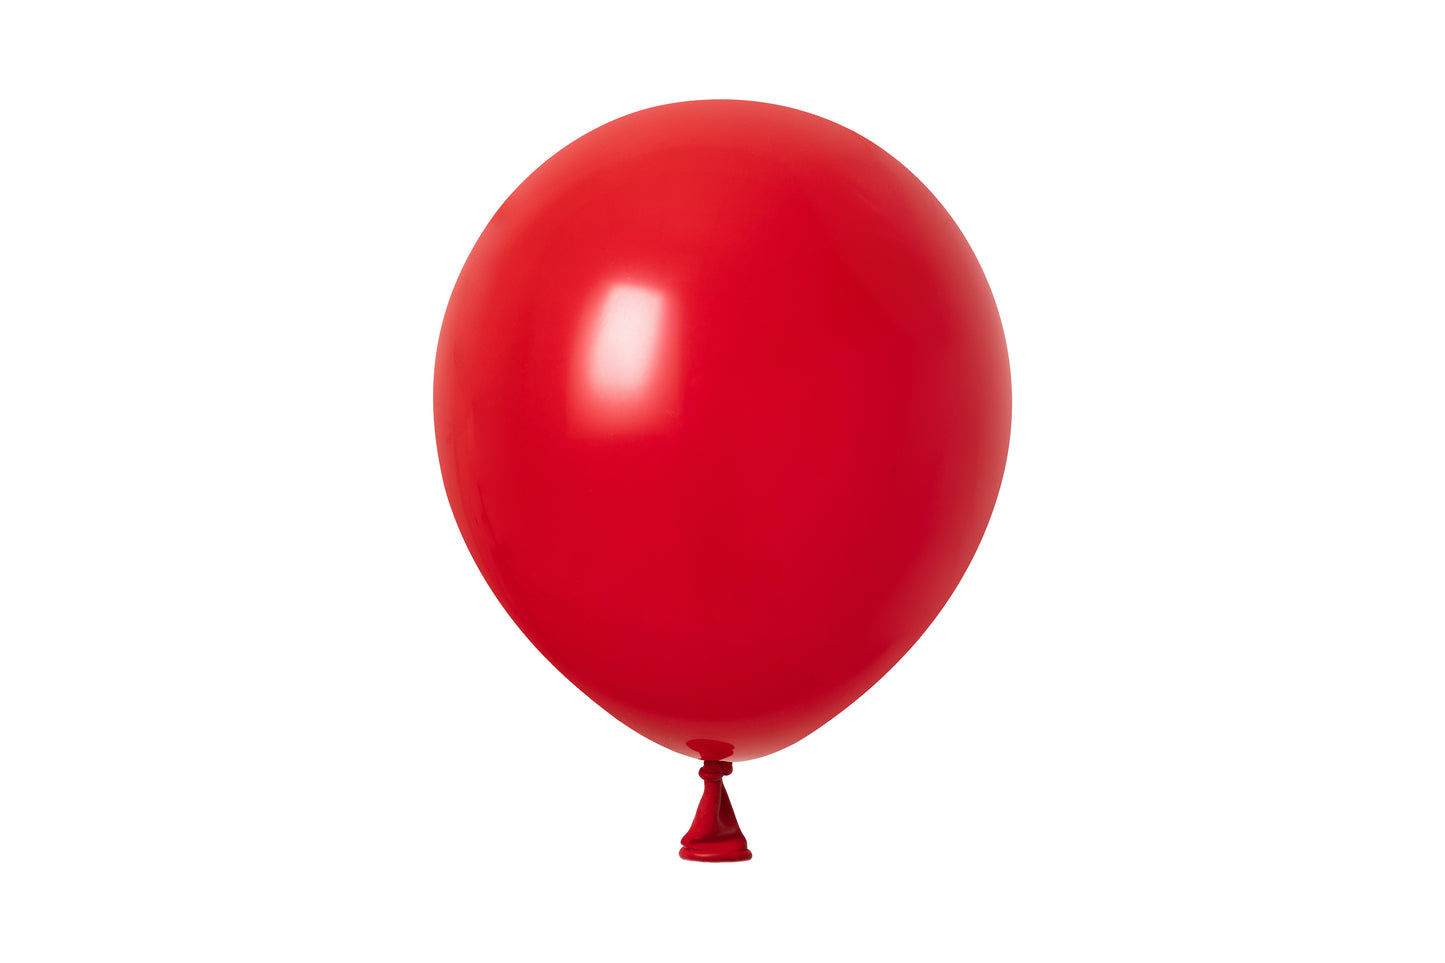 Winntex Premium 5" Latex Balloon - Hot Red - 100ct